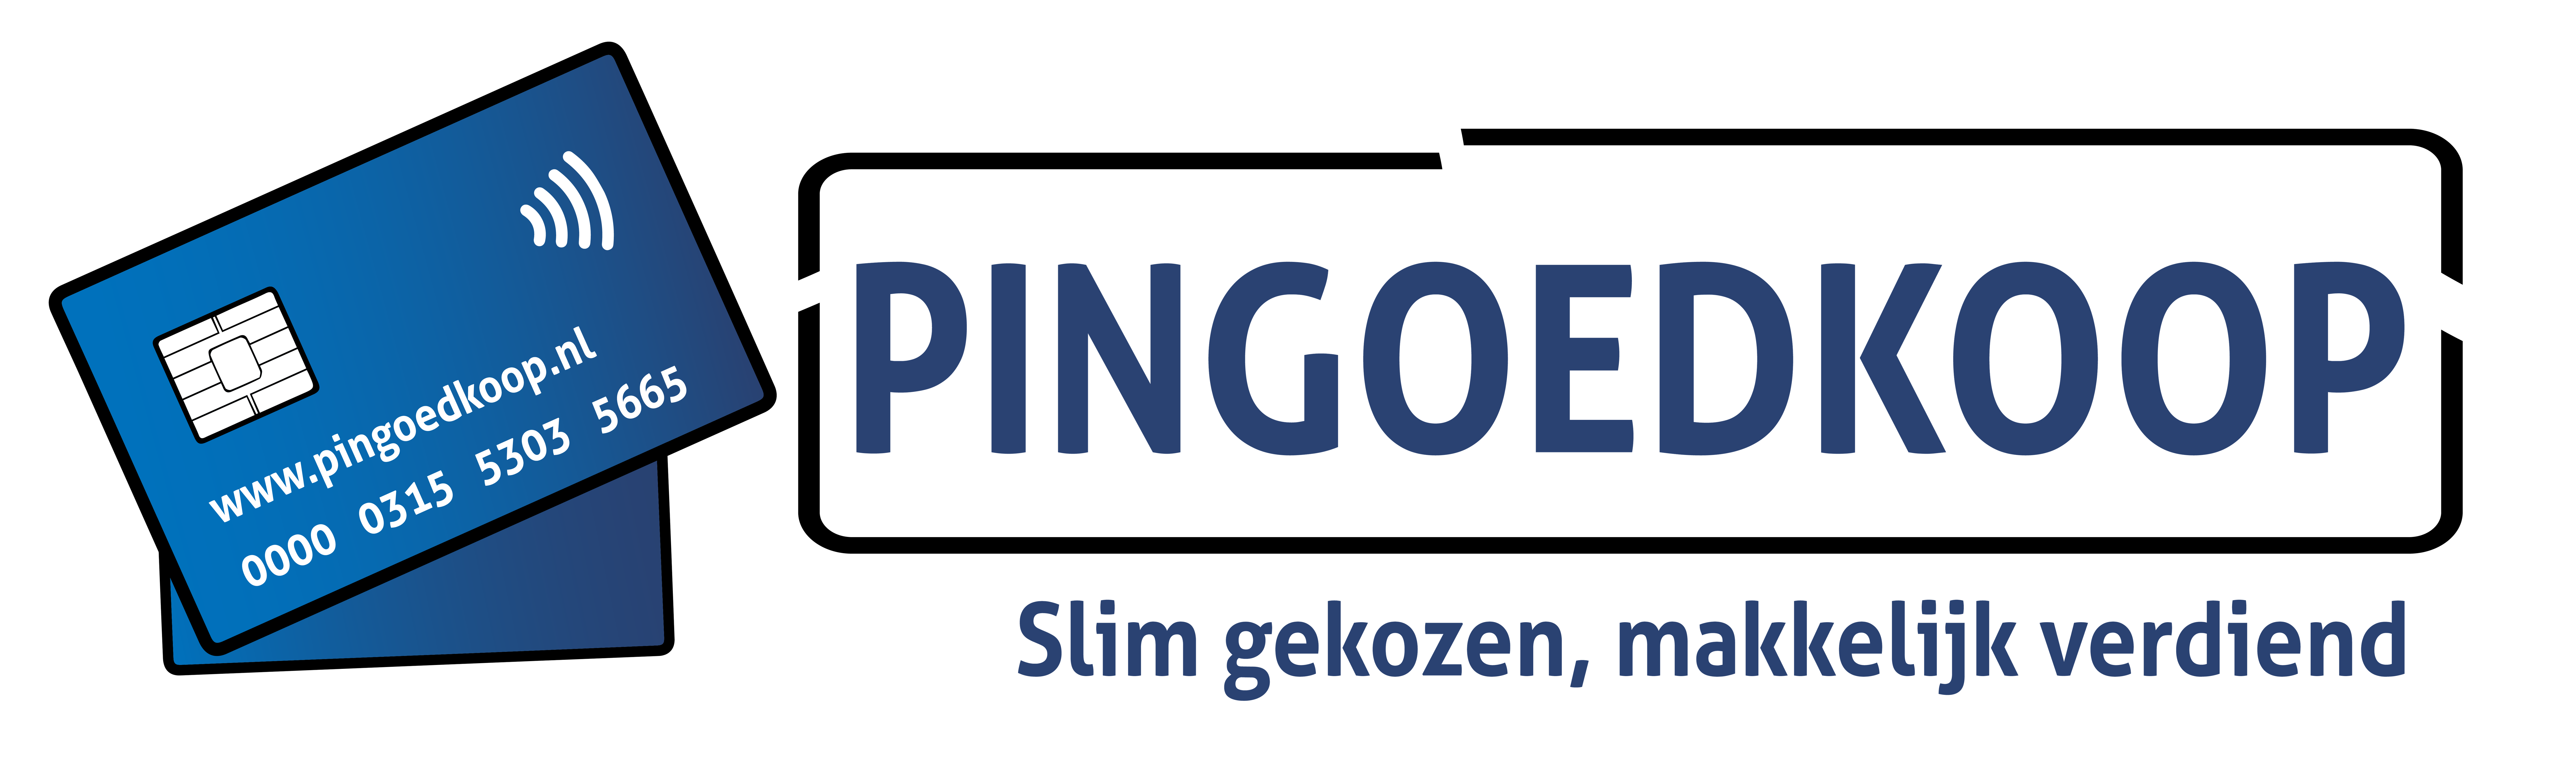 Pingoedkoop.nl